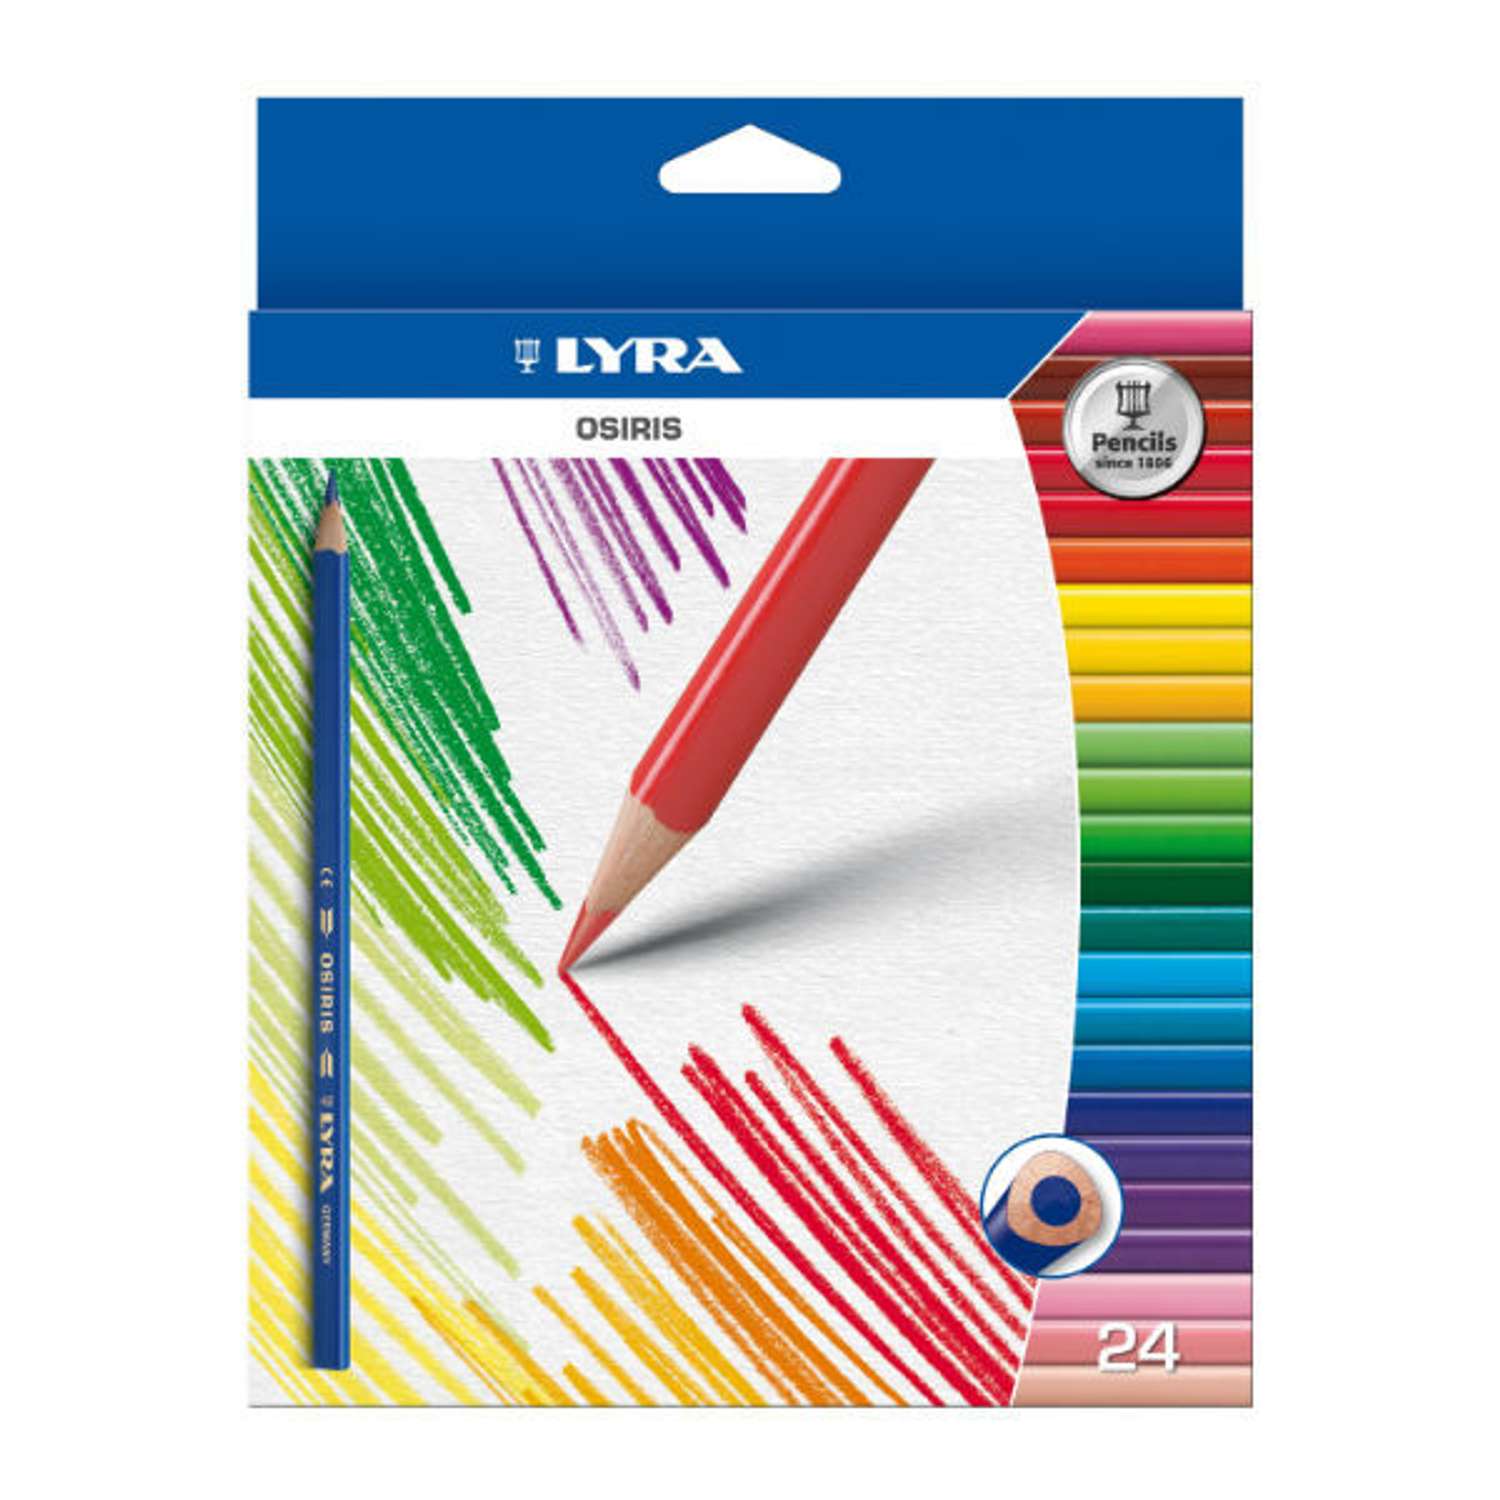 Цветные карандаши Lyra Osiris треугольные (грифель 28 мм) 24 цвета - фото 1